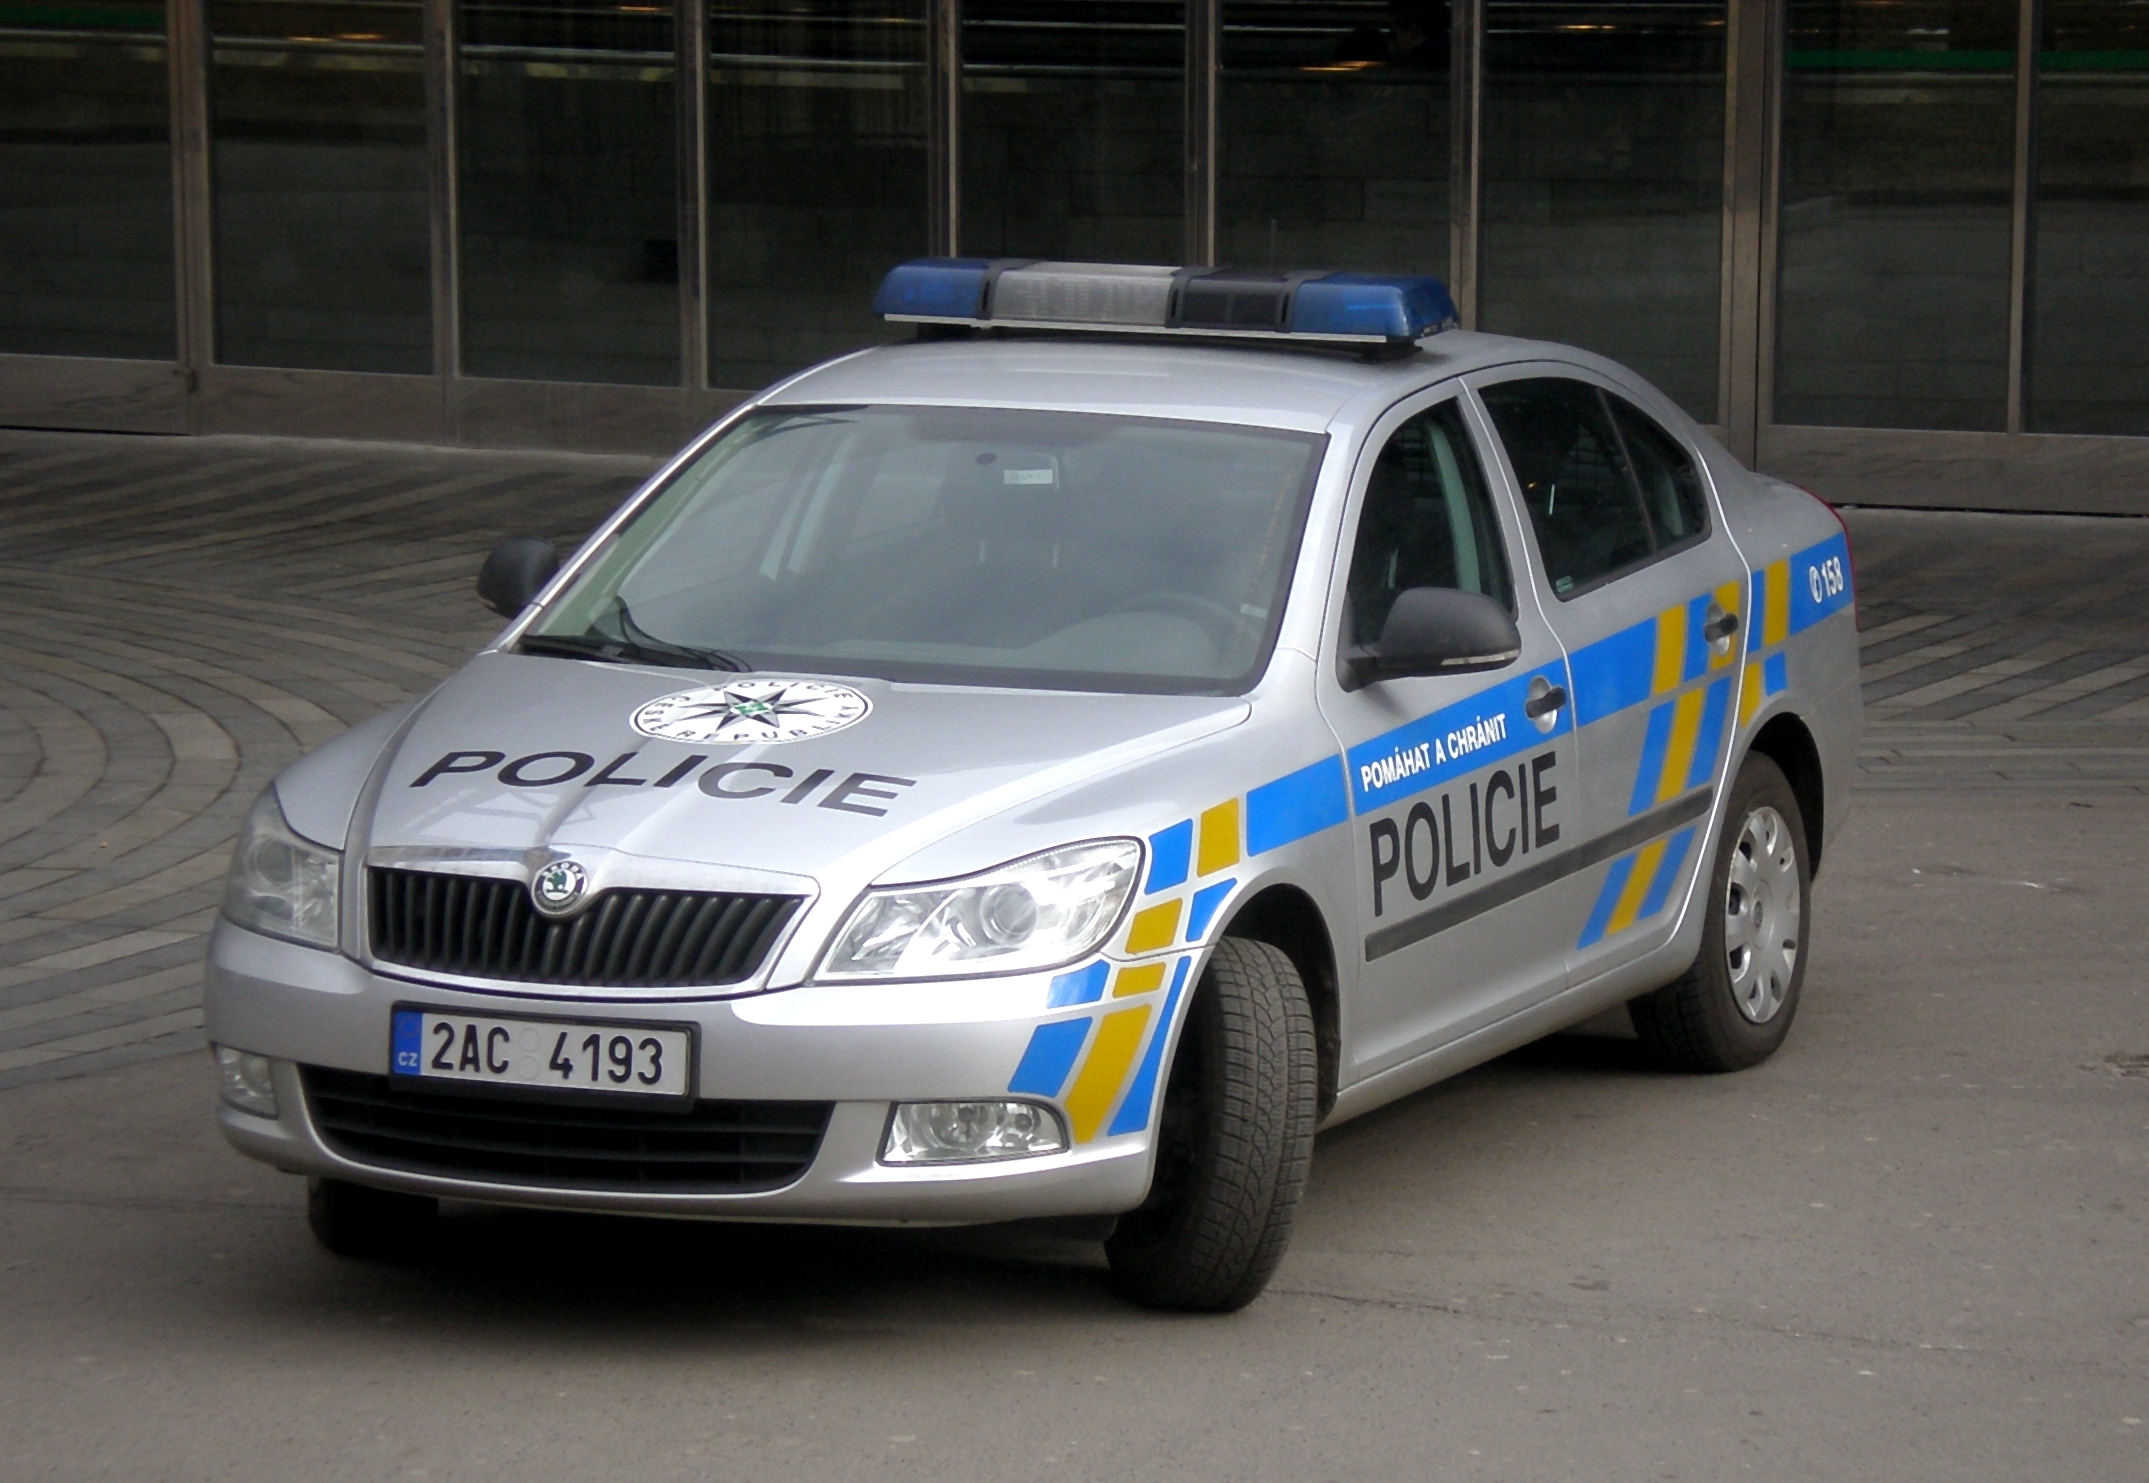 Skoda Police Czech